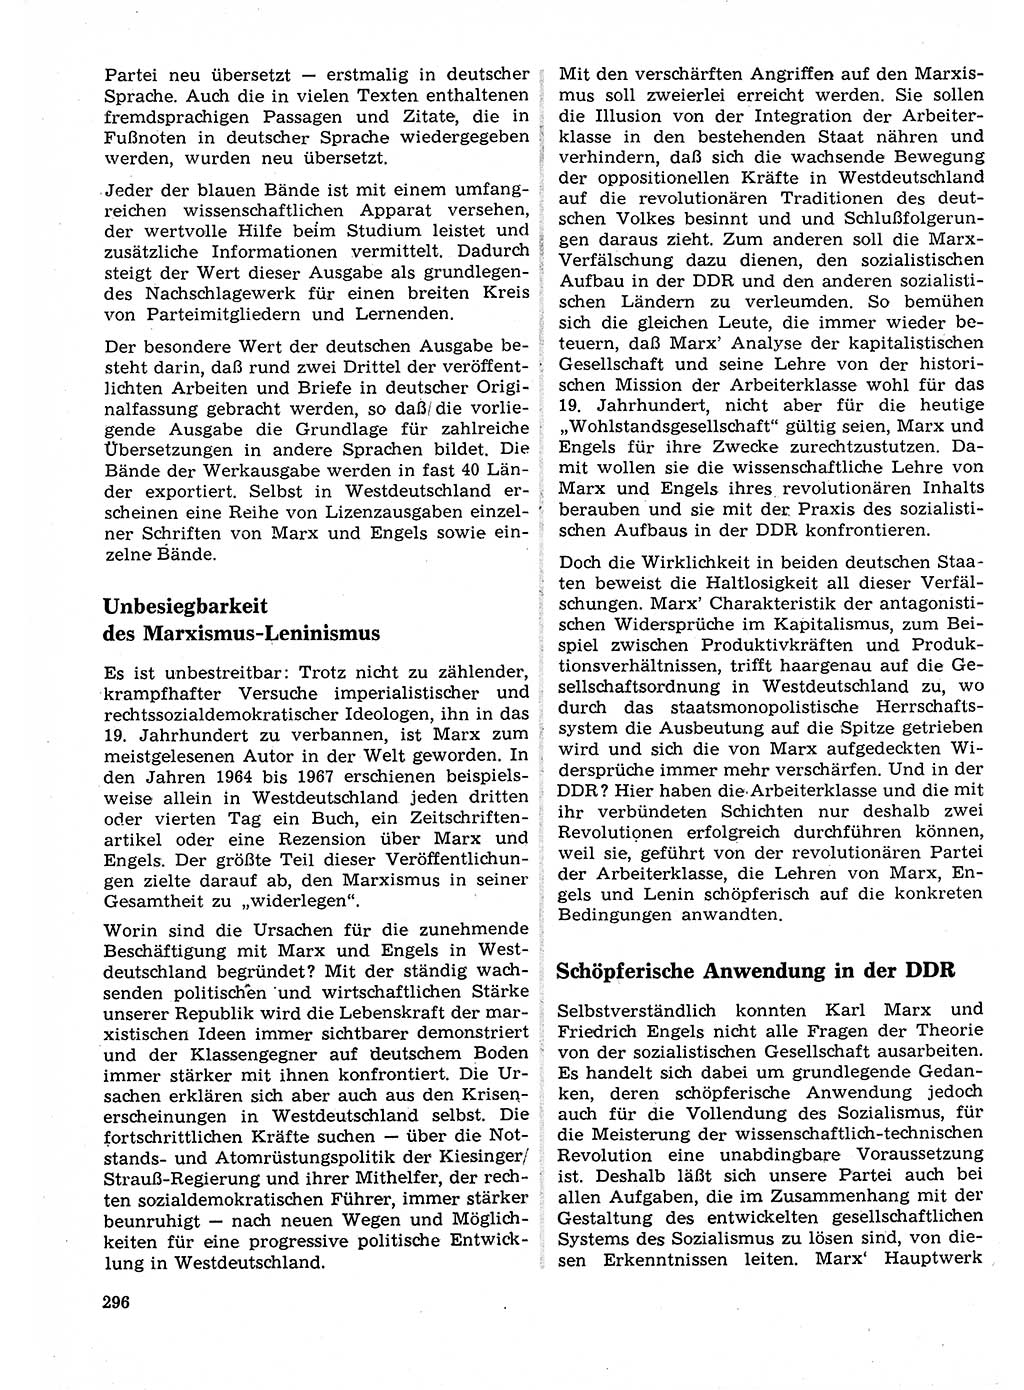 Neuer Weg (NW), Organ des Zentralkomitees (ZK) der SED (Sozialistische Einheitspartei Deutschlands) für Fragen des Parteilebens, 23. Jahrgang [Deutsche Demokratische Republik (DDR)] 1968, Seite 296 (NW ZK SED DDR 1968, S. 296)